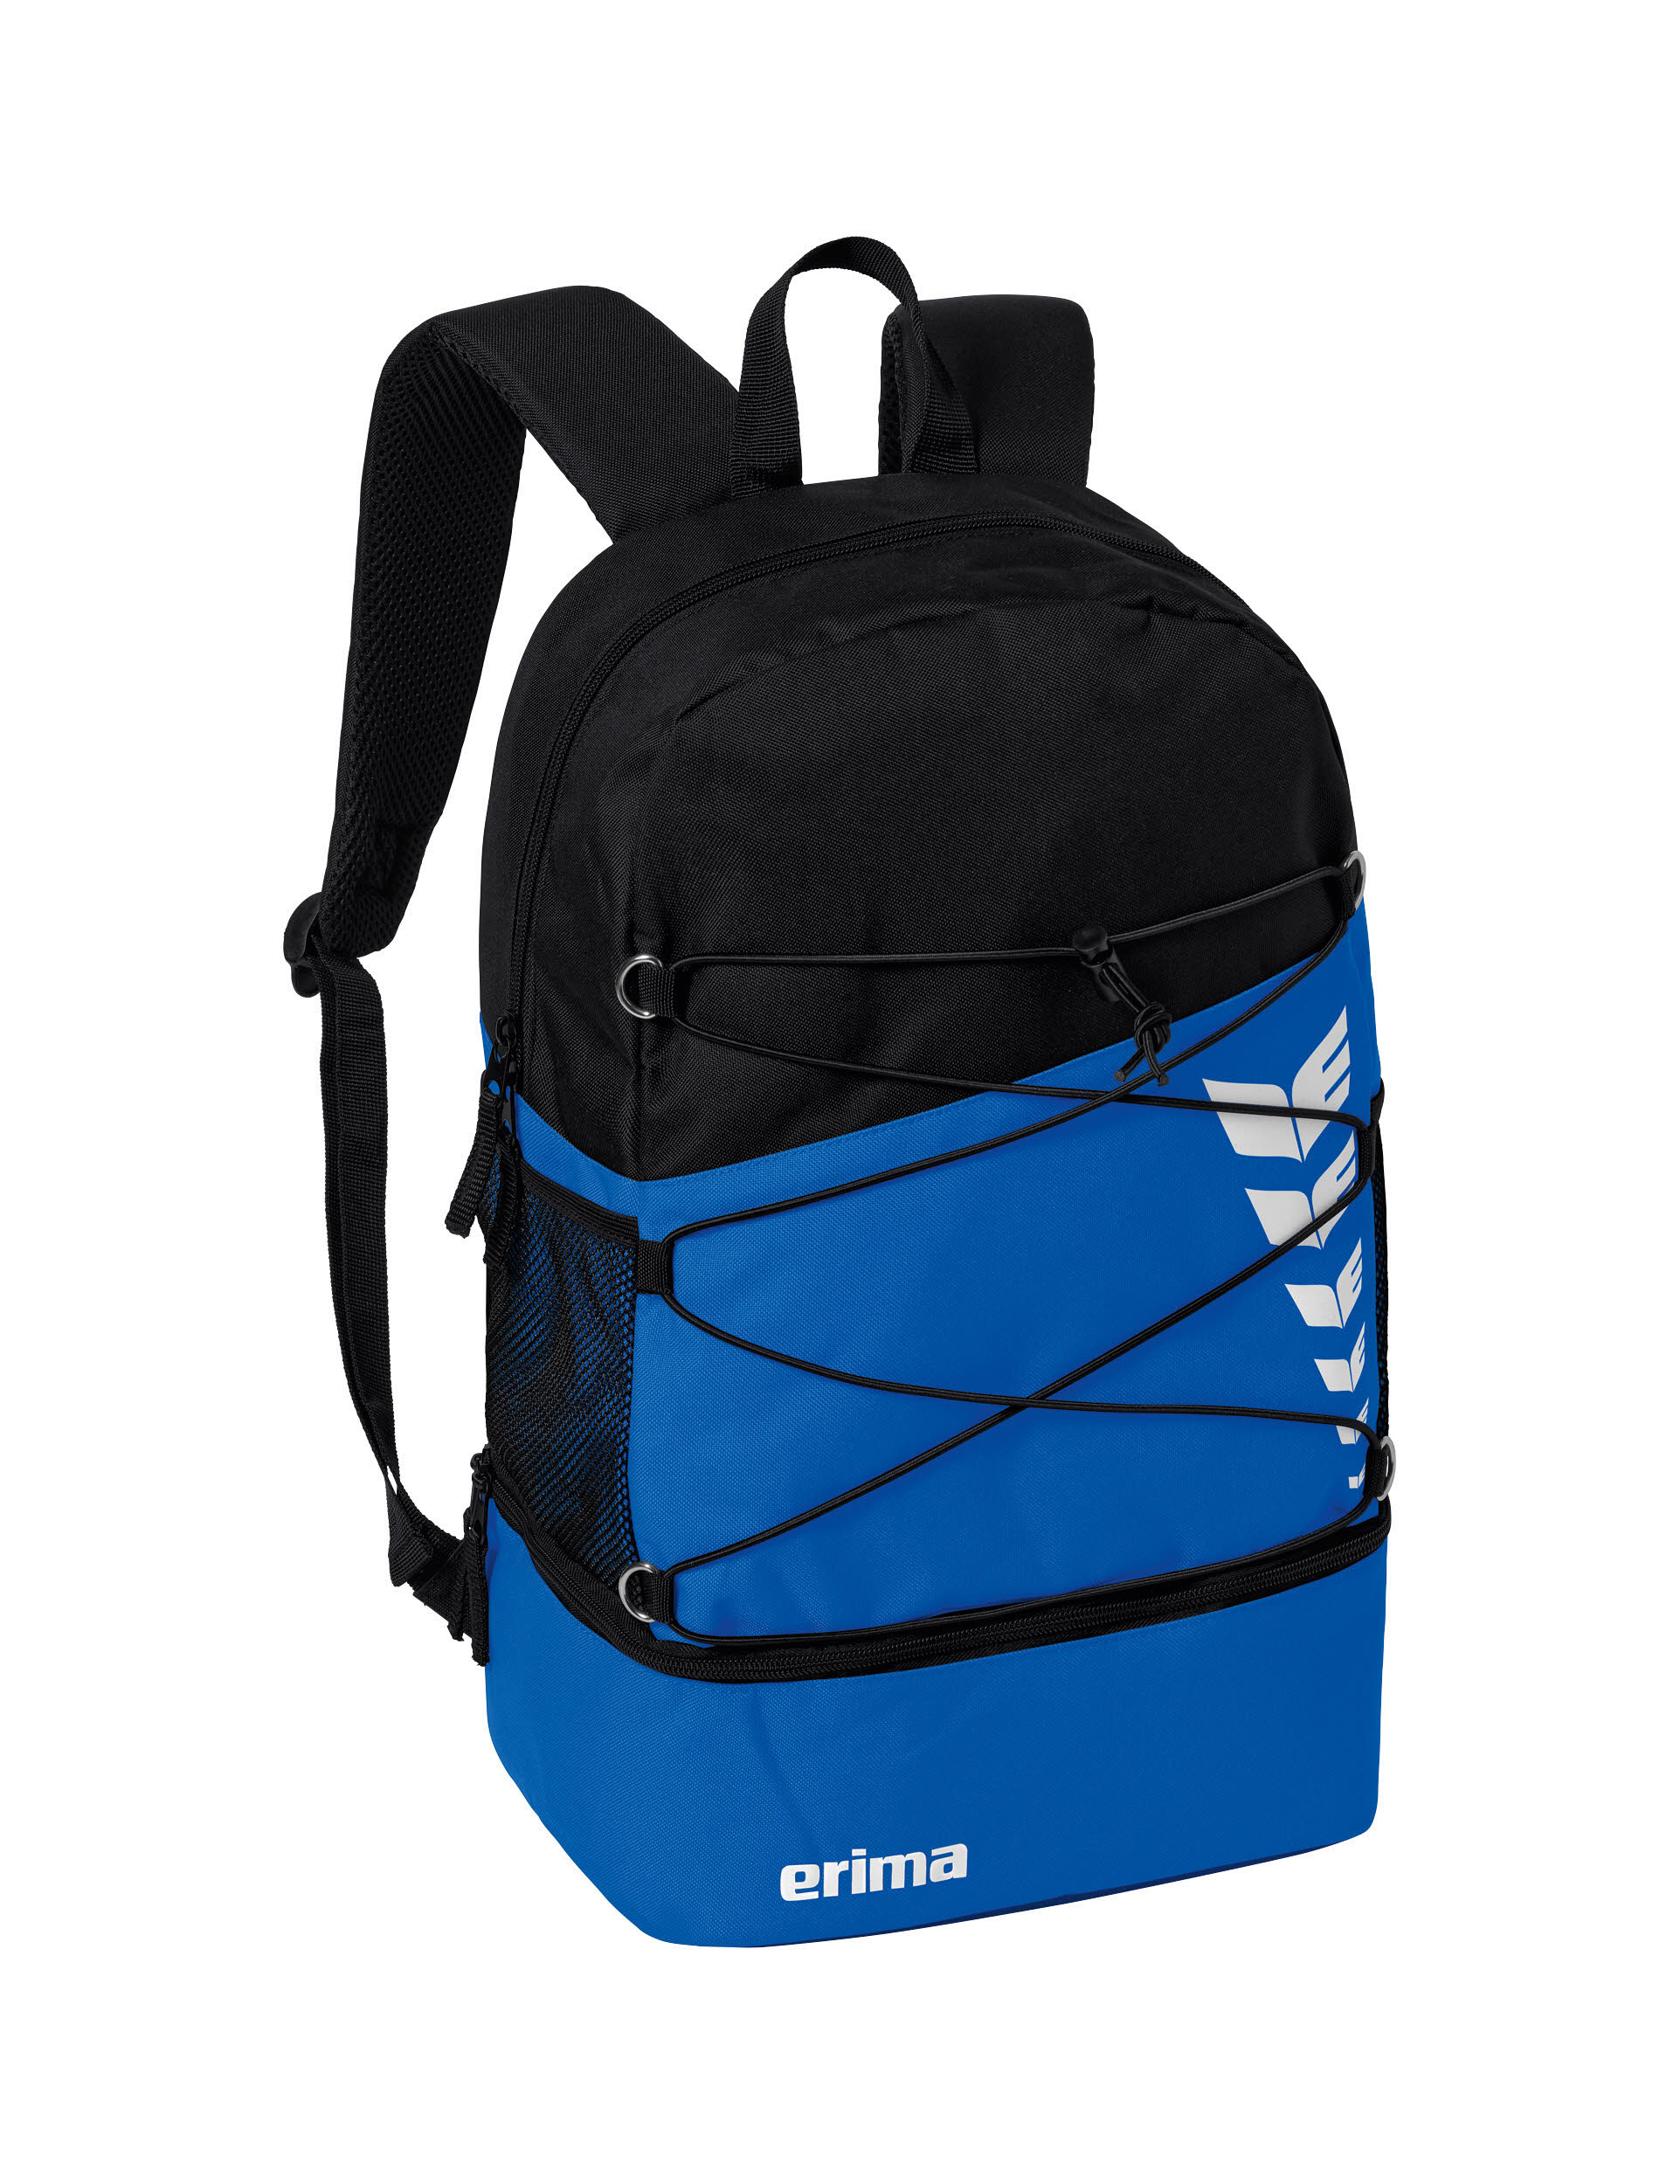 erima Six Wings Rucksack mit separatem Bodenfach Freizeit Schule blau